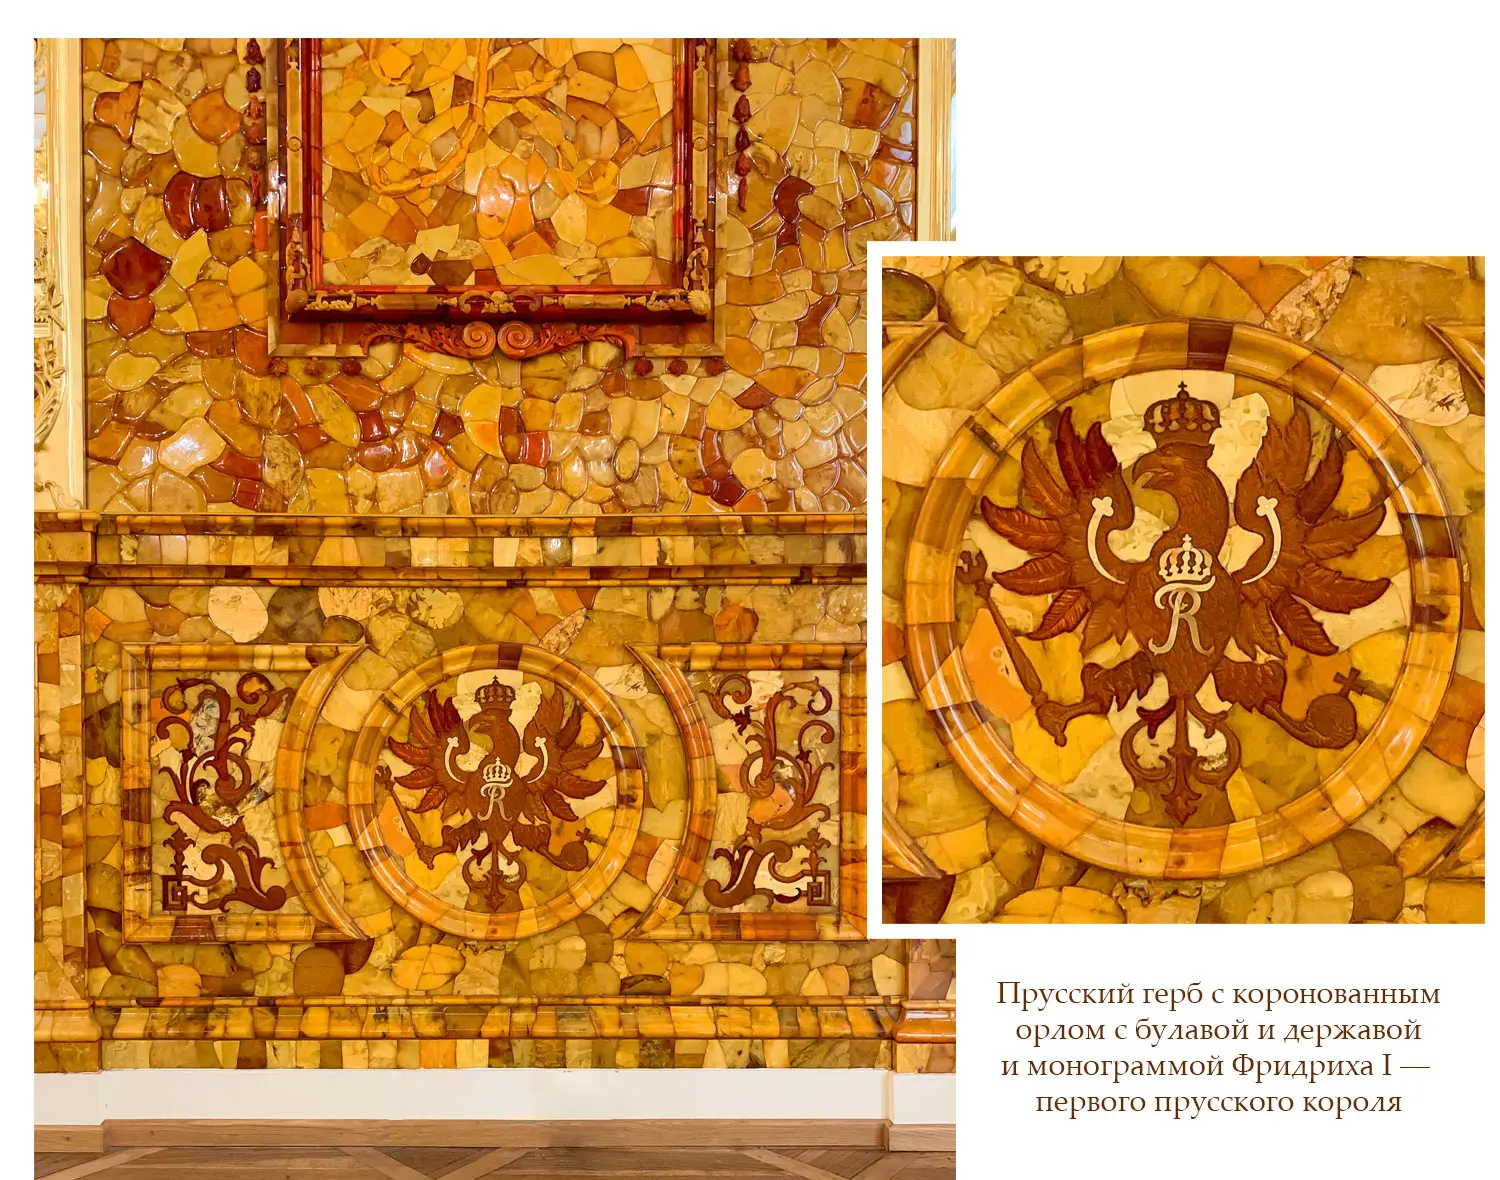 Мозаика панелей Янтарной комнаты